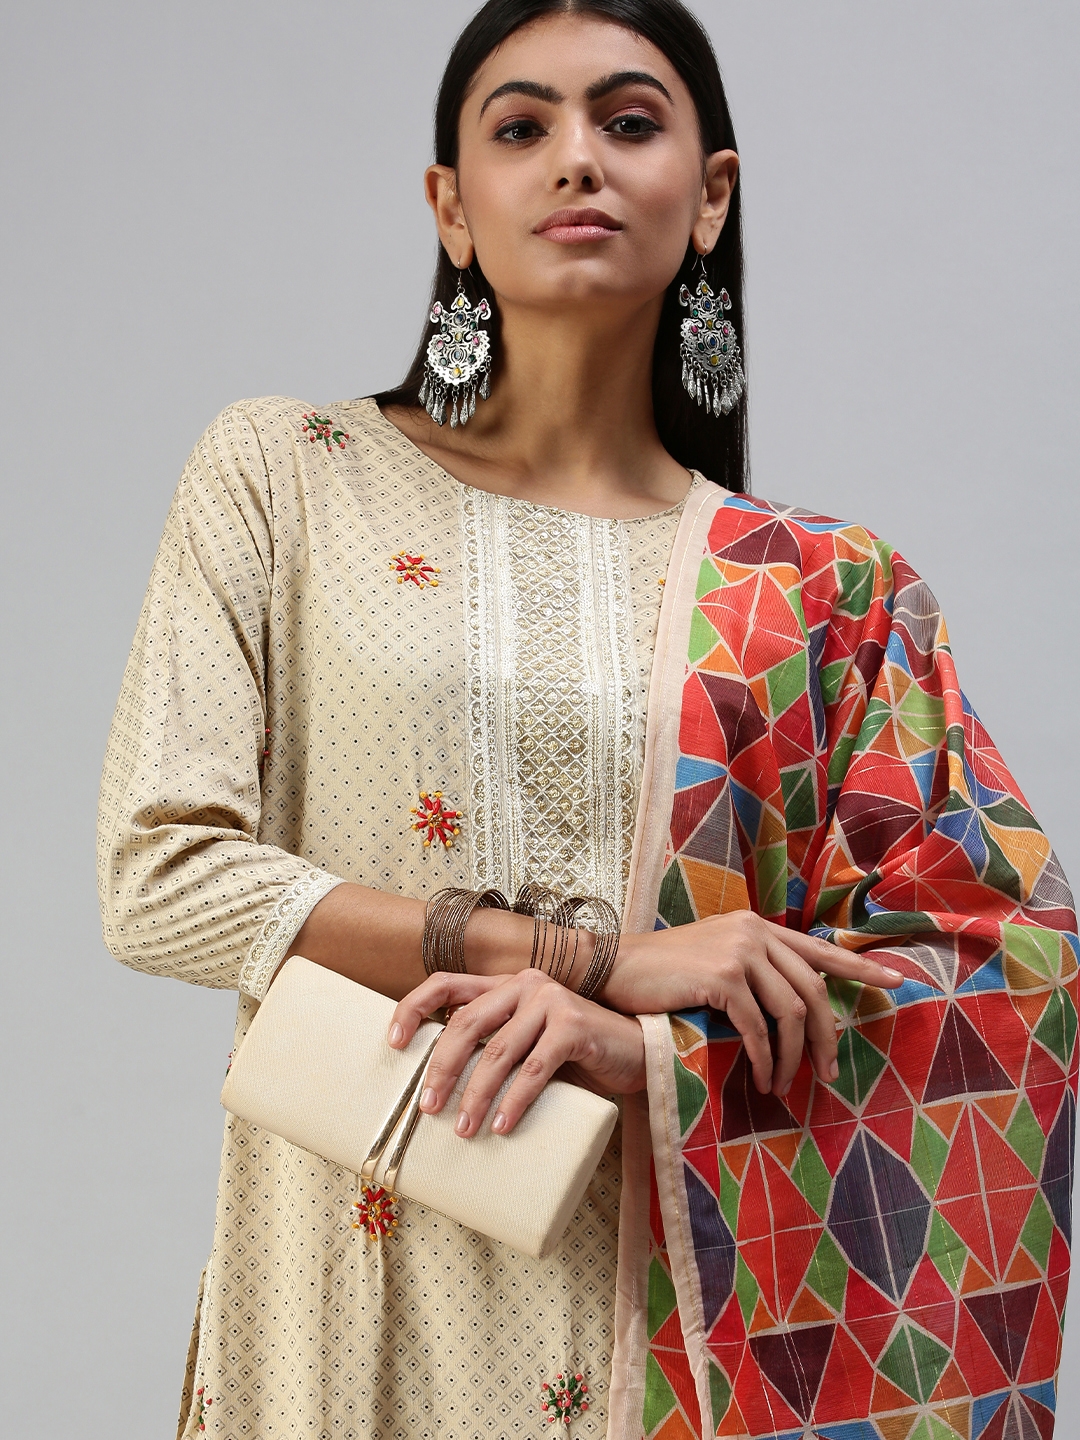 Women's Beige Cotton Blend Printed Regular Kurta Sets